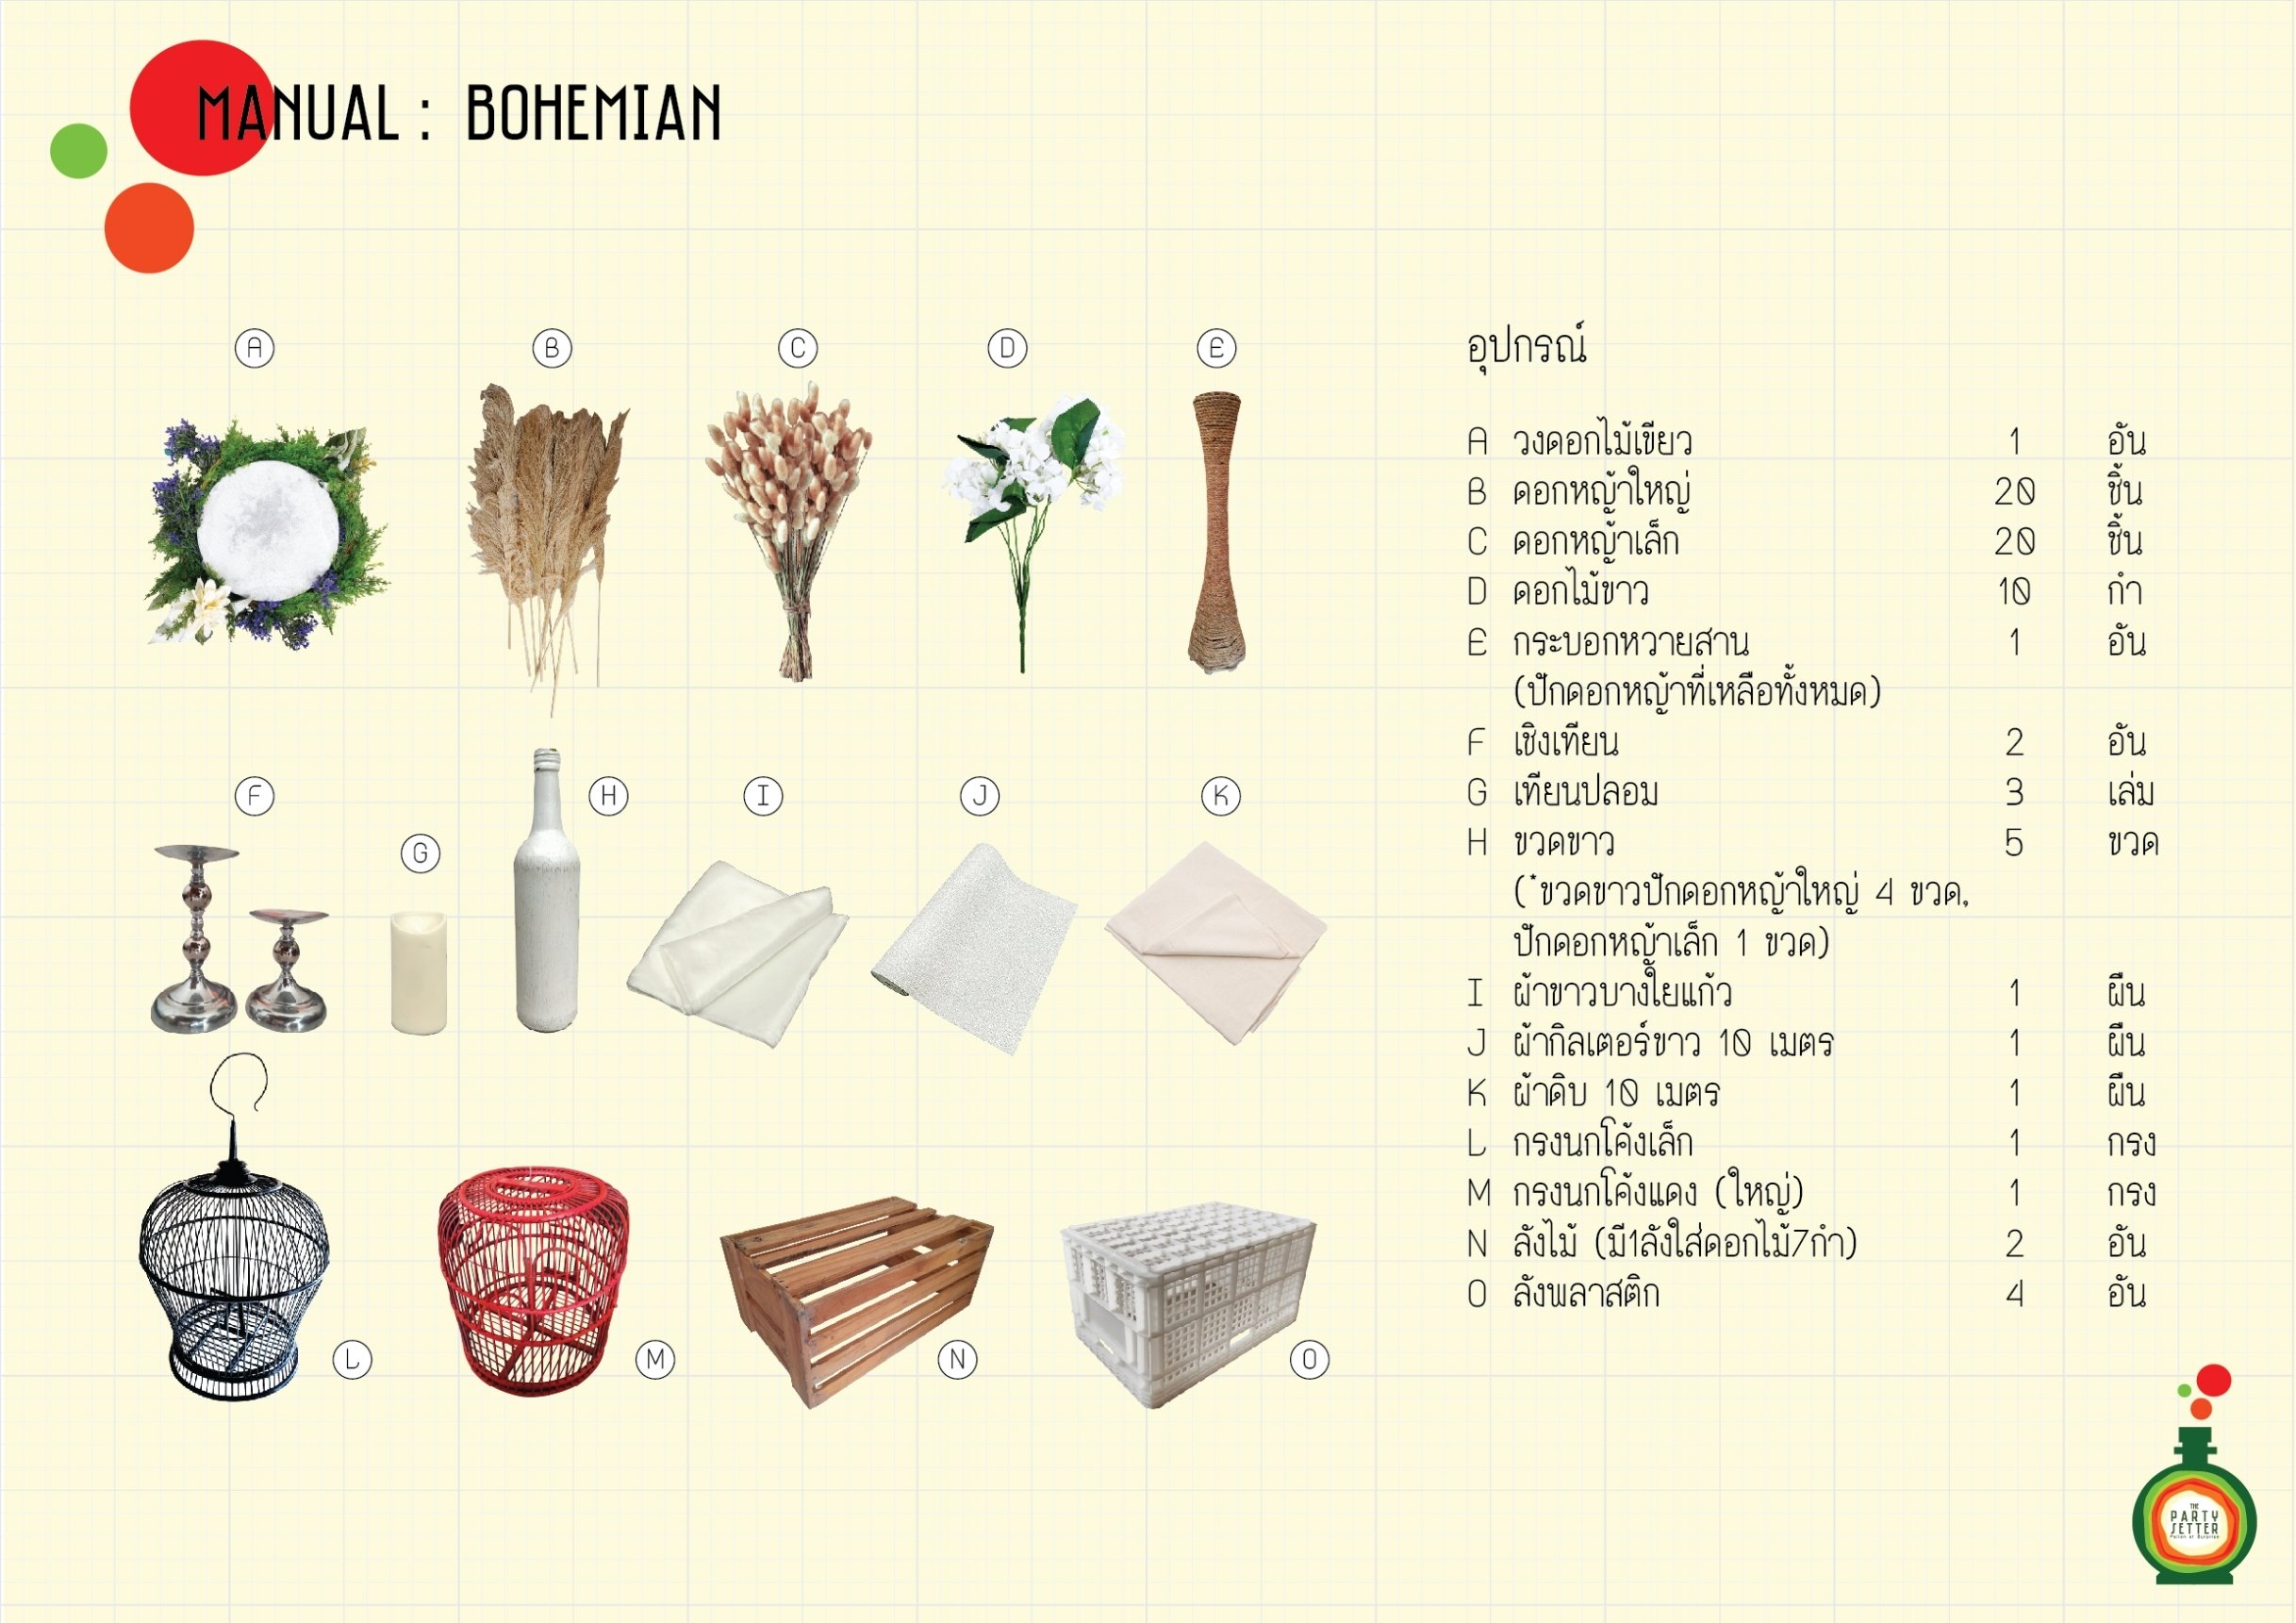 Manual_Bohemian-00-01.jpg